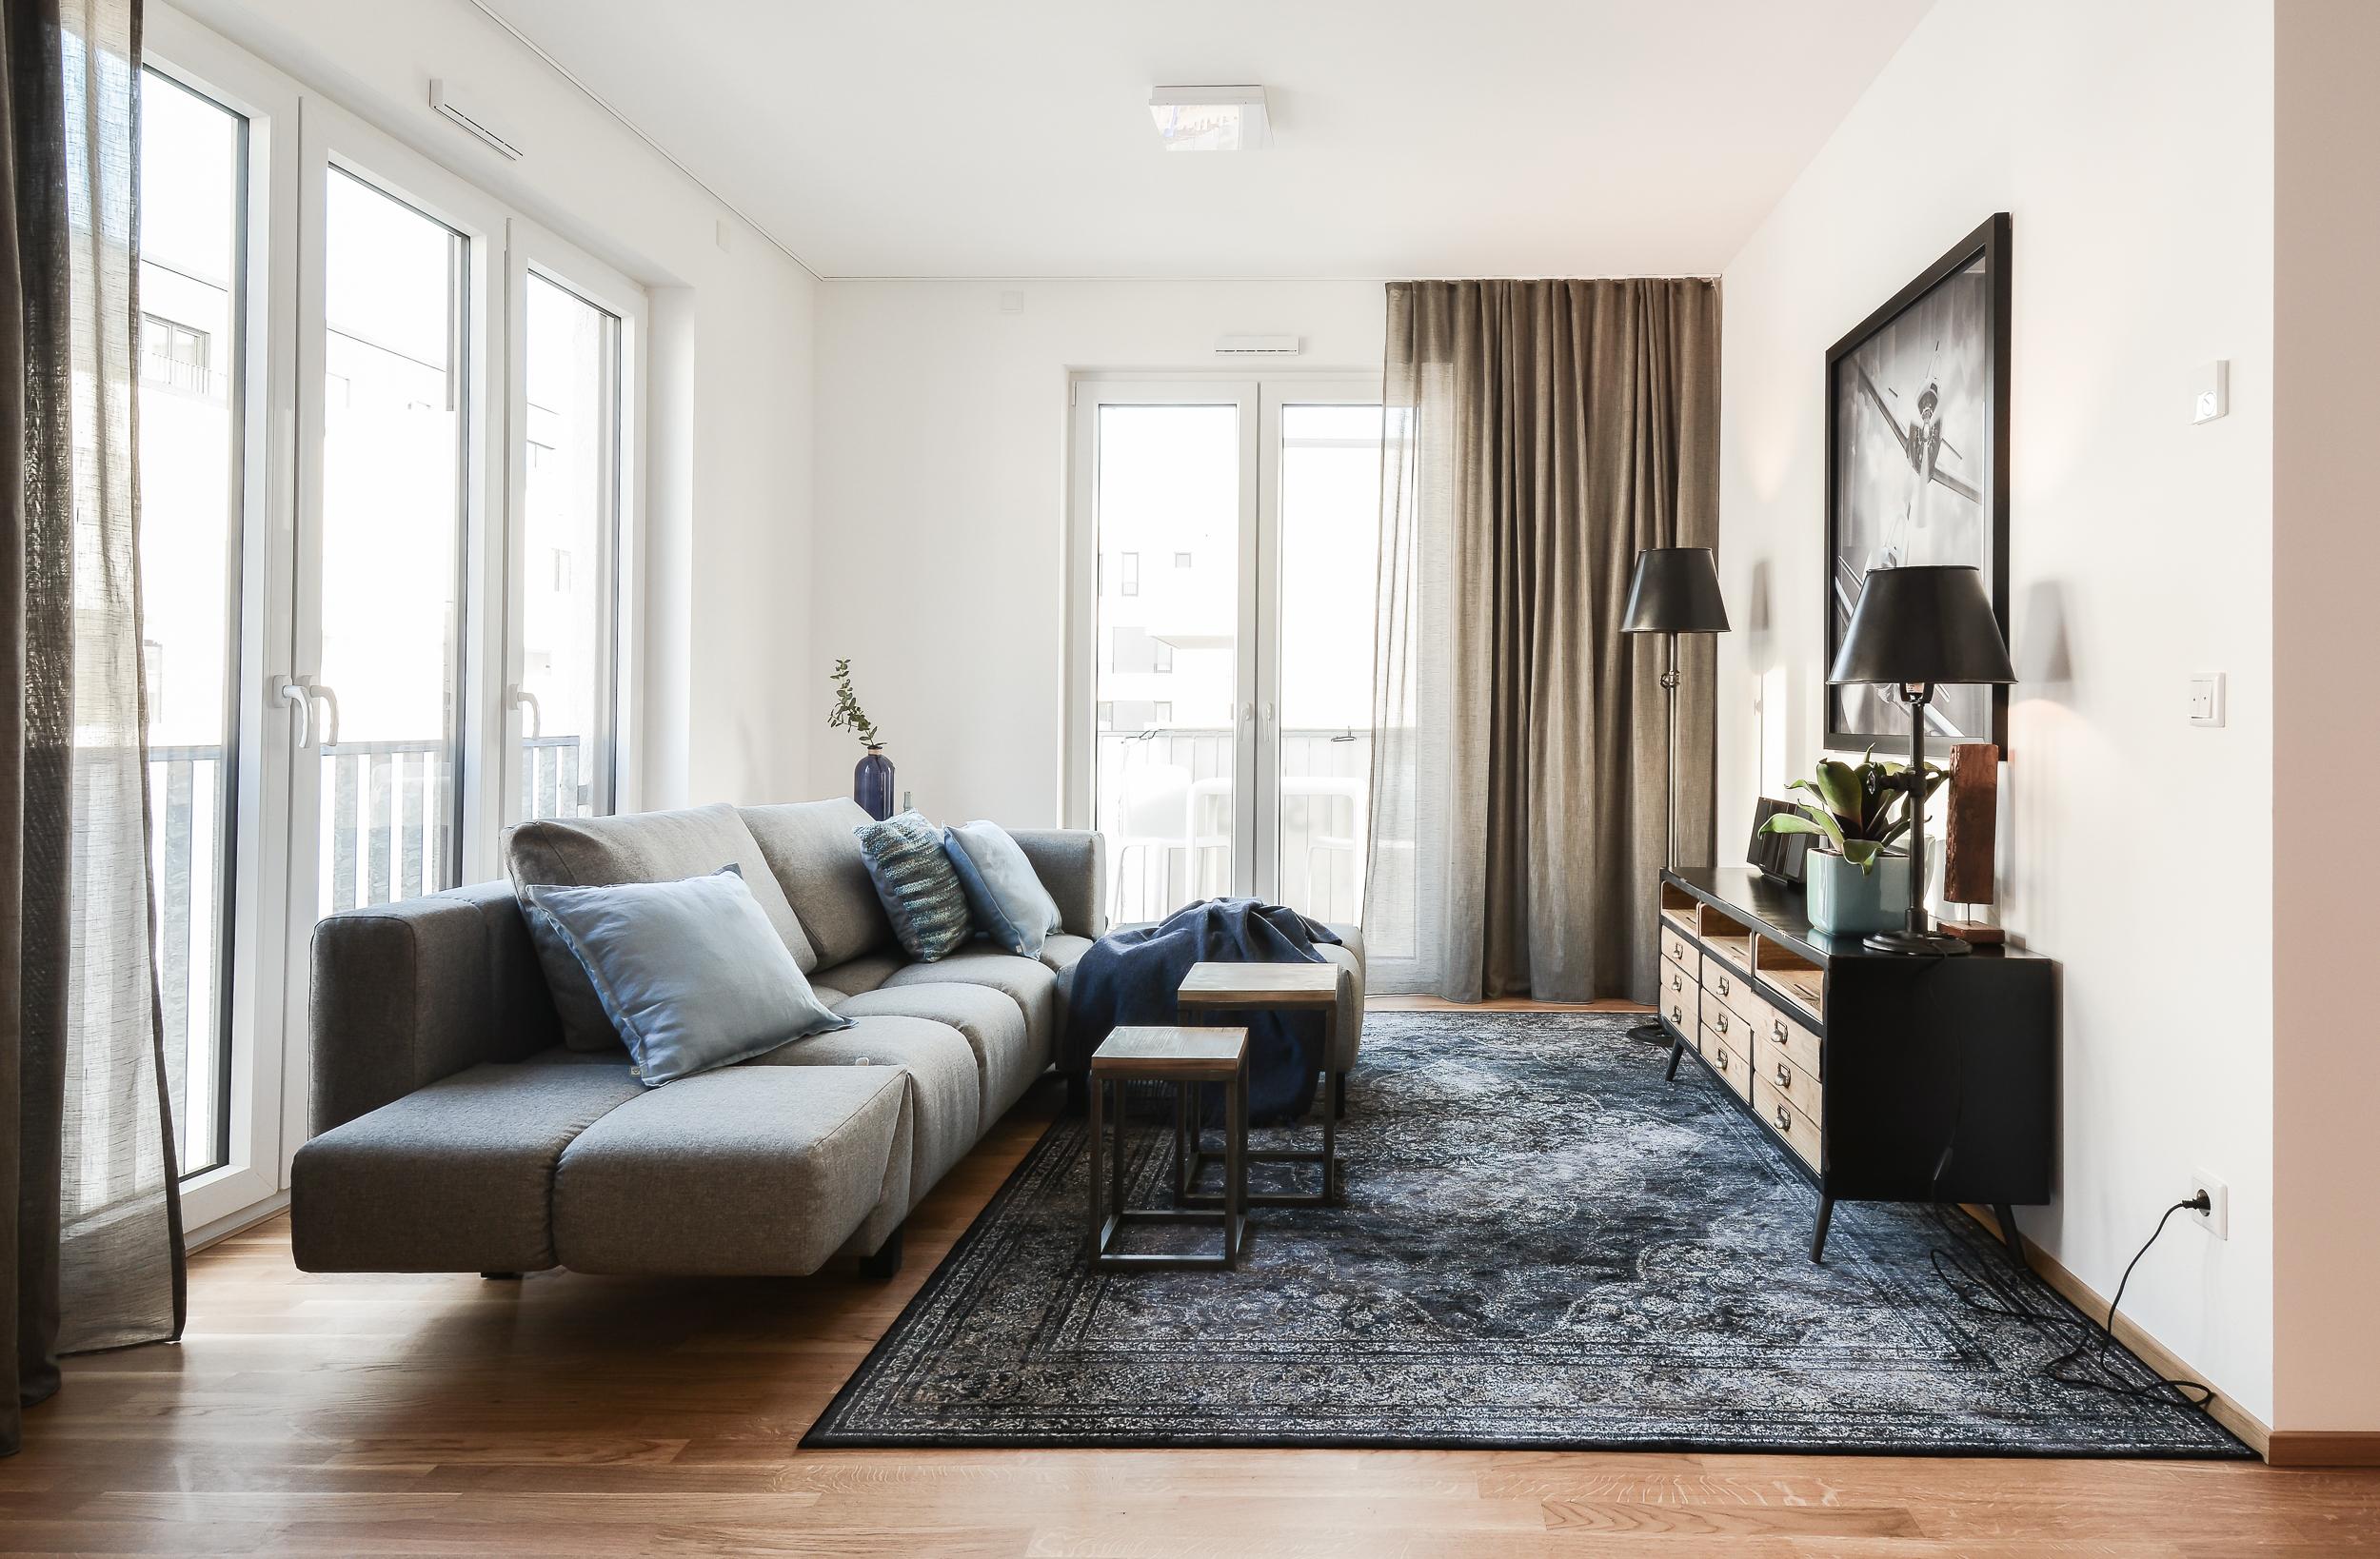 Wohnzimmer Industrial Style #industrialdesigntisch #zimmergestaltung ©Luna Homestaging